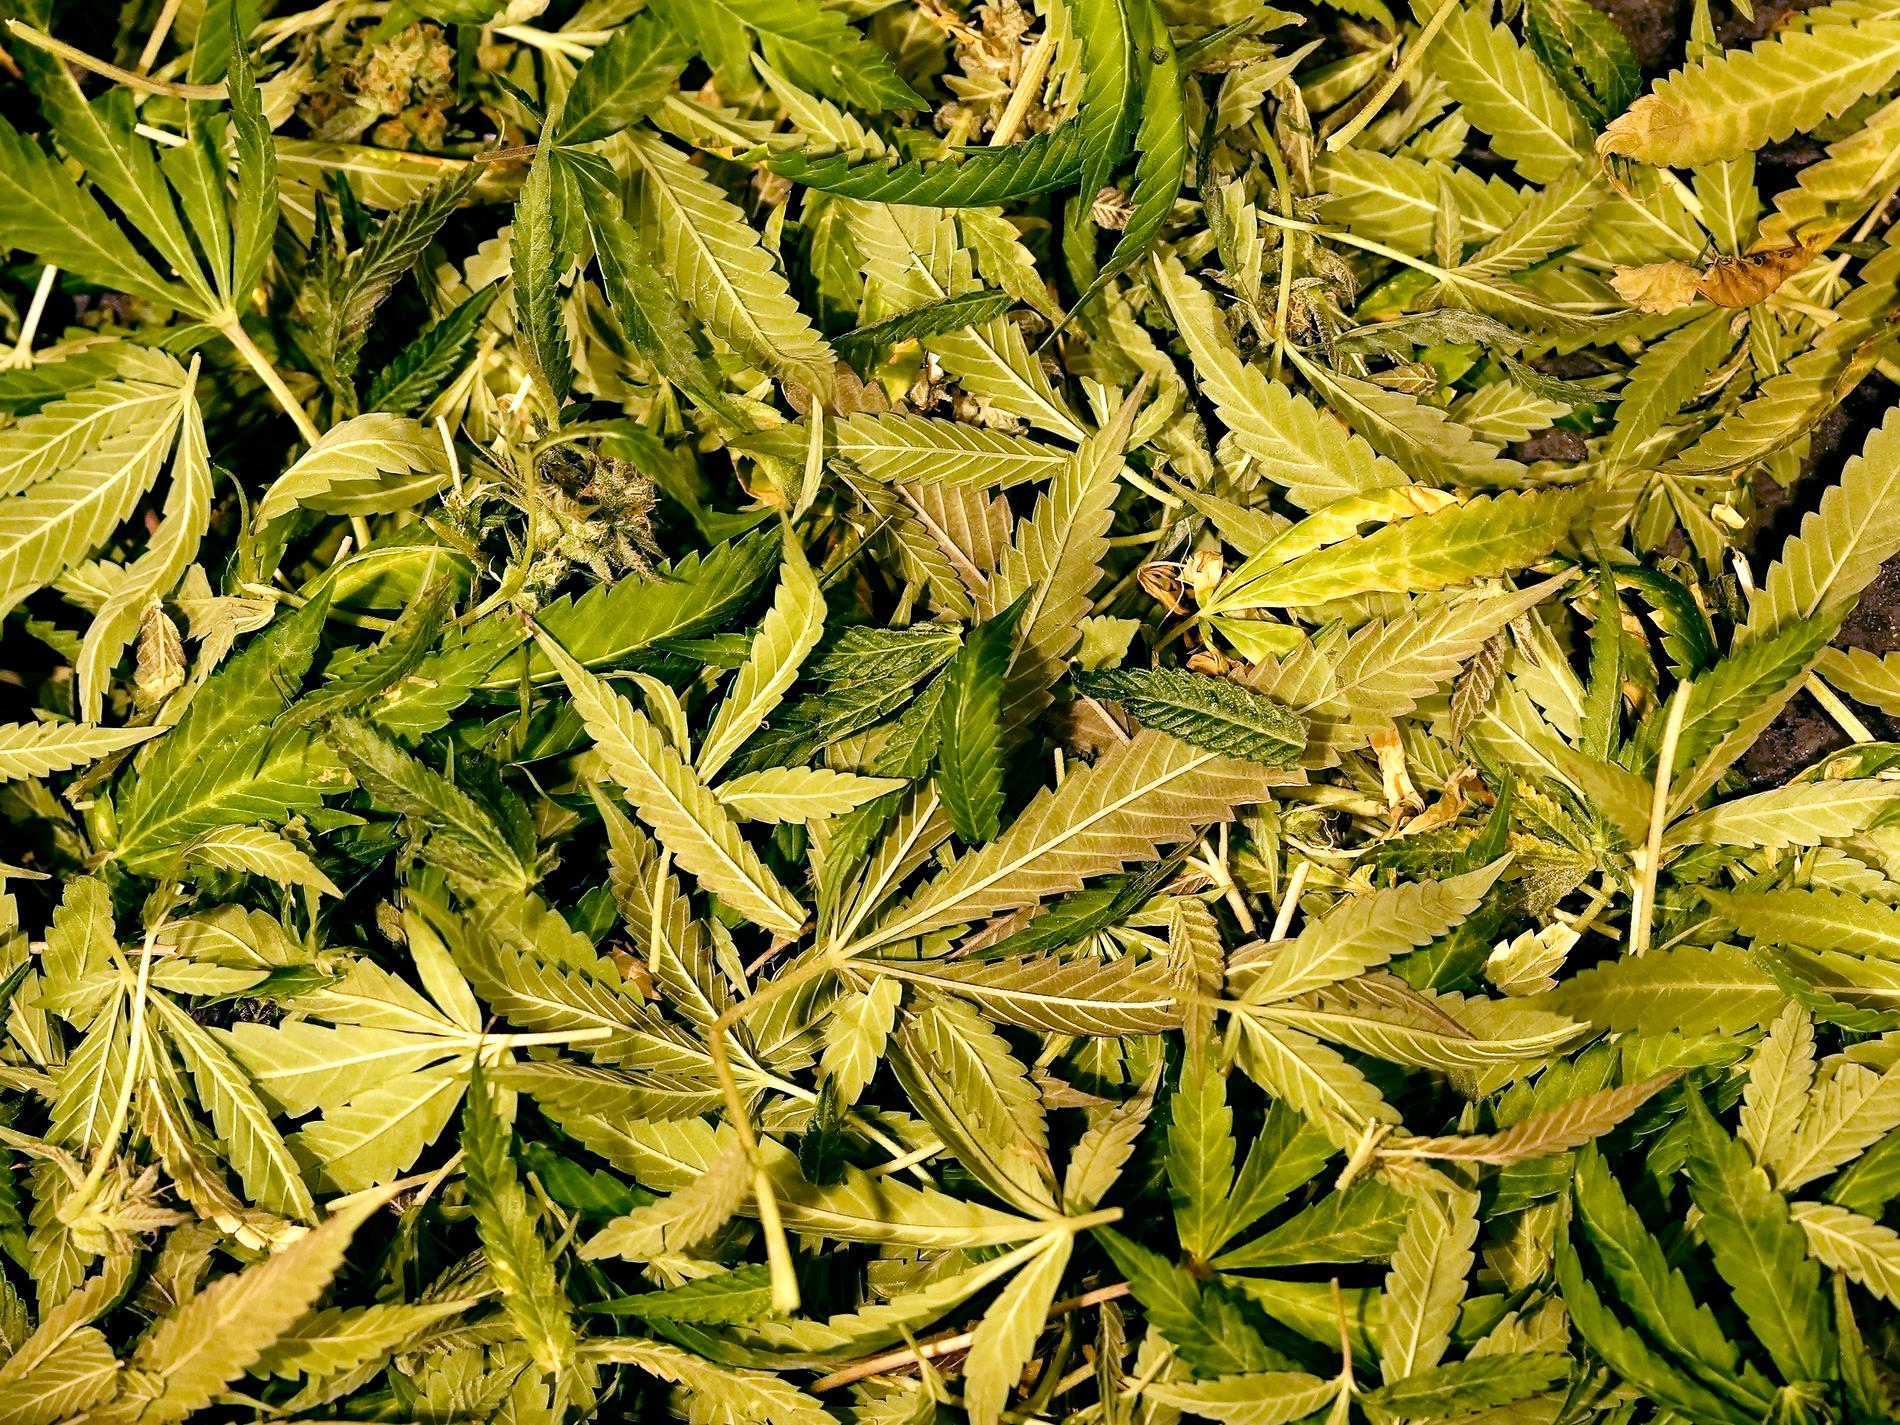 Doft avslöjade misstänkt cannabisodlare